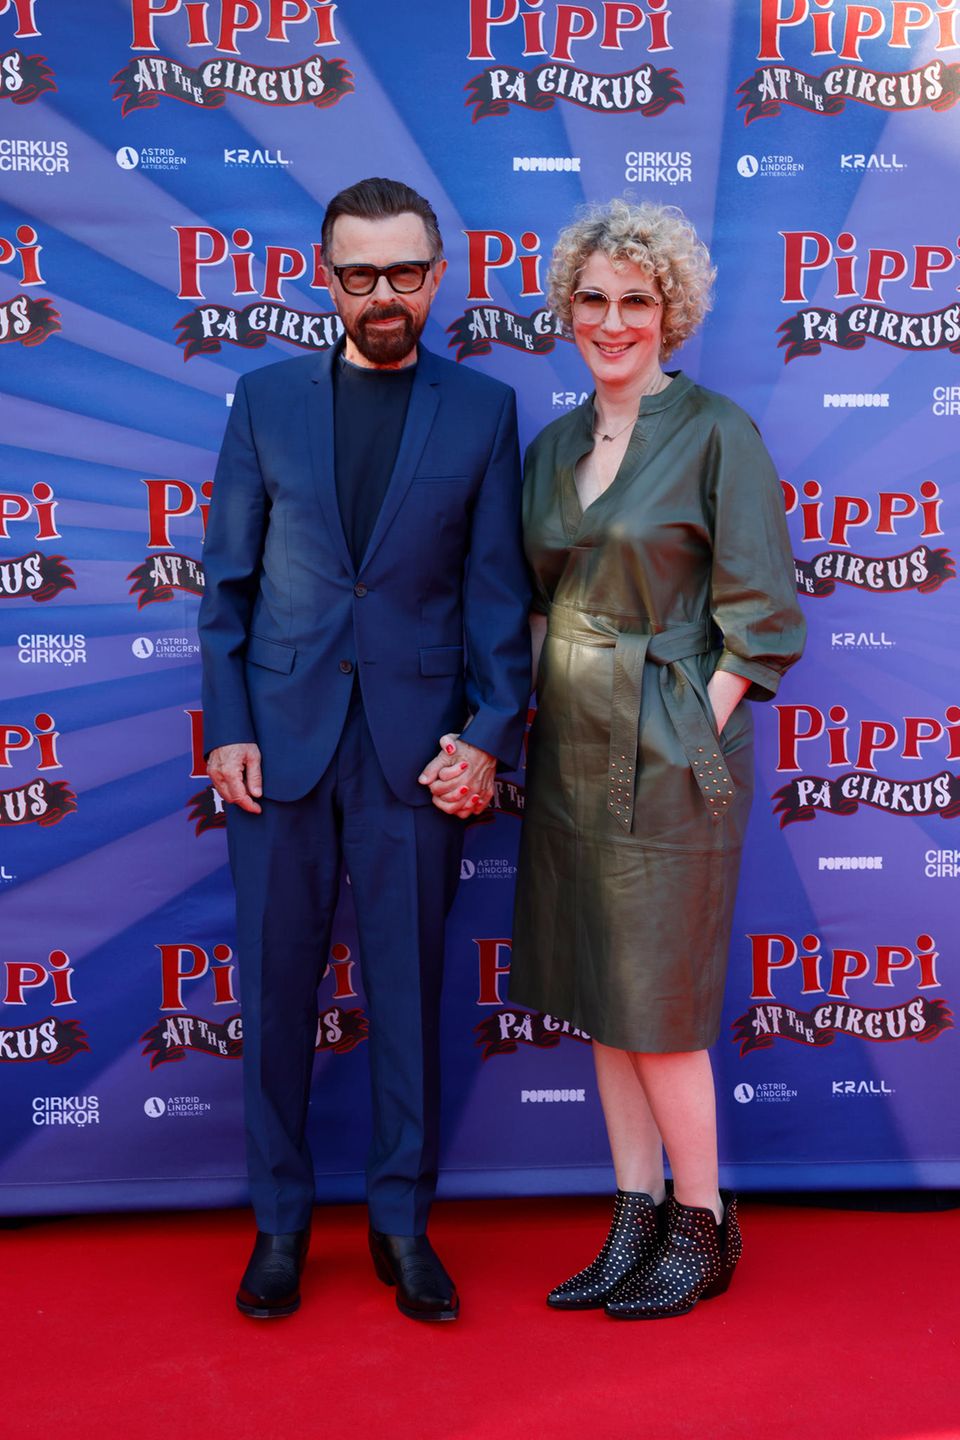 Abba-Star Björn Ulvaeus und seine neue Partnerin Christina Sas bei der Premiere des von ihm produzierten Zirkus-Musicals "Pippi på Cirkus" (Pippi im Zirkus) am 12. Juli 2022 in Stockholm.